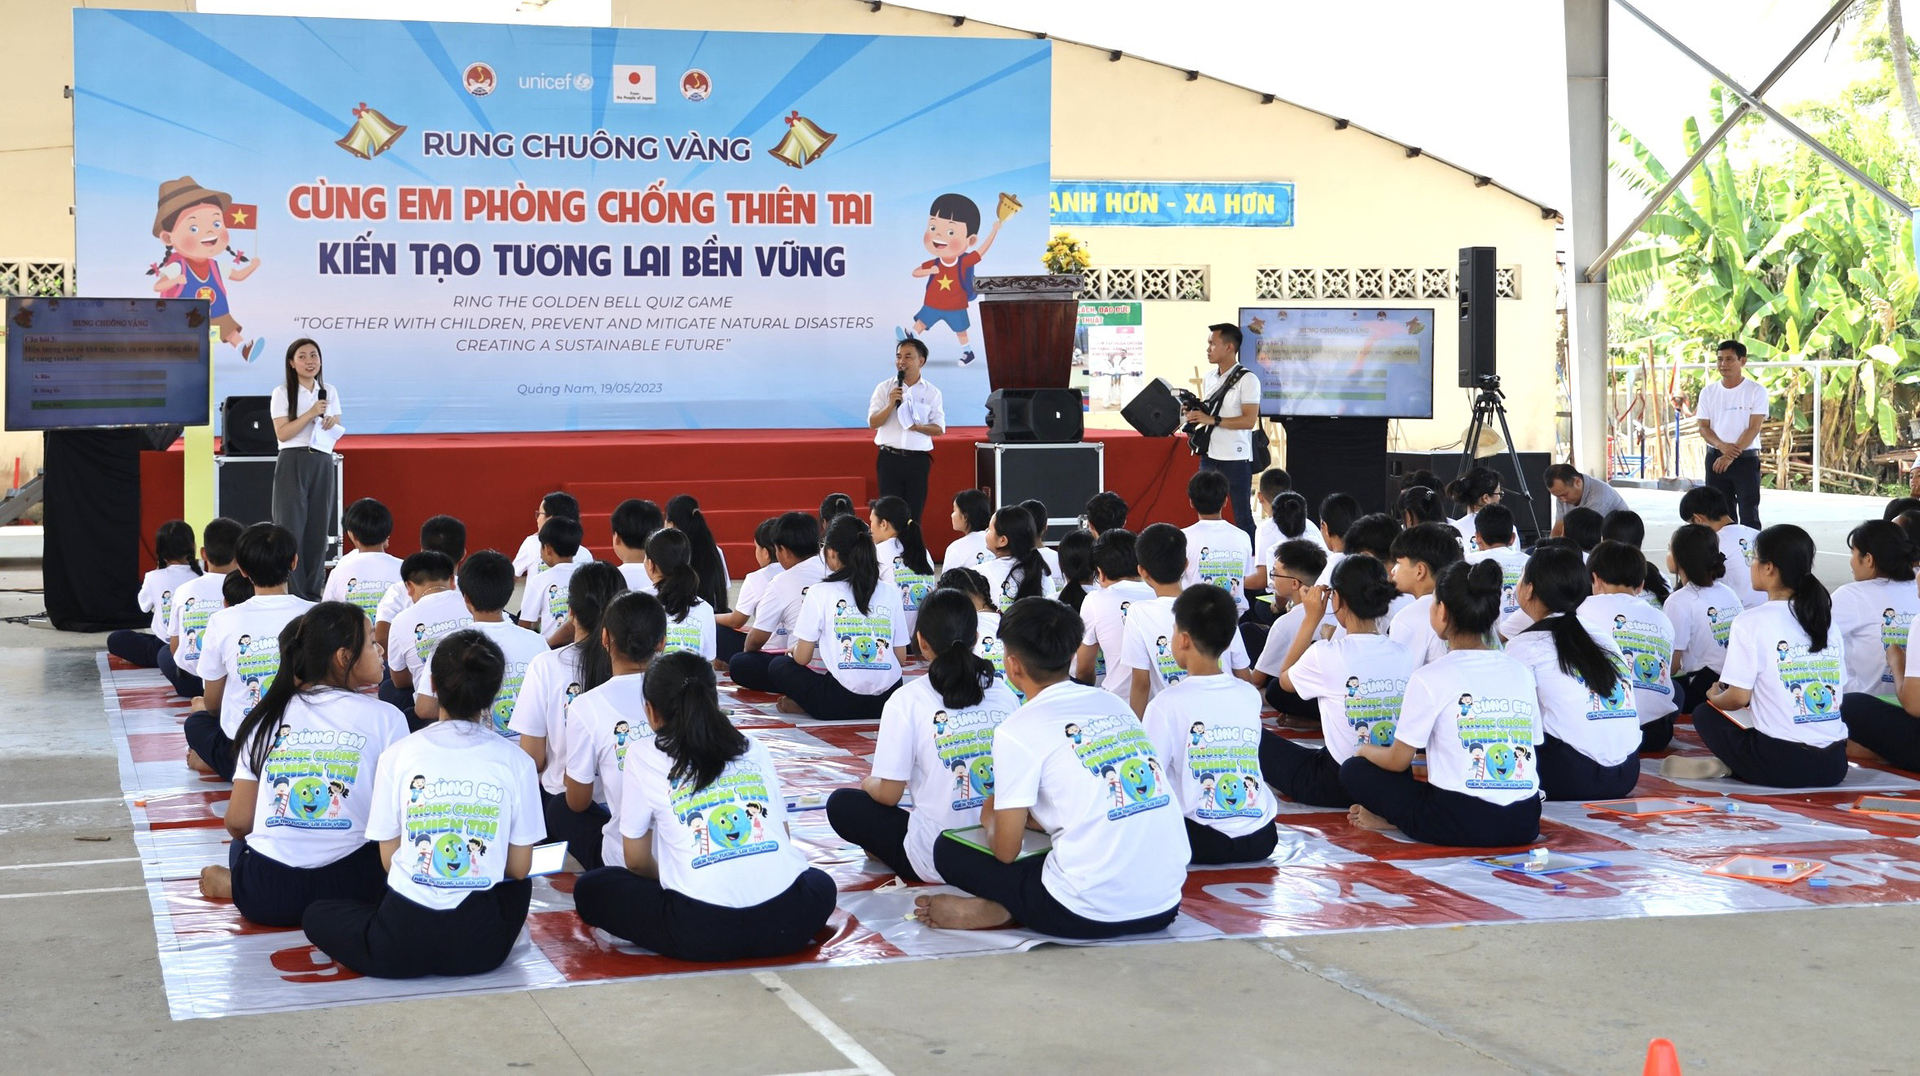 Cuộc thi Rung chuông vàng về tìm hiểu kiến thức về phòng chống thiên tai được triển khai cho các học sinh tại tỉnh Quảng Nam. Ảnh: Hoàng Hà.